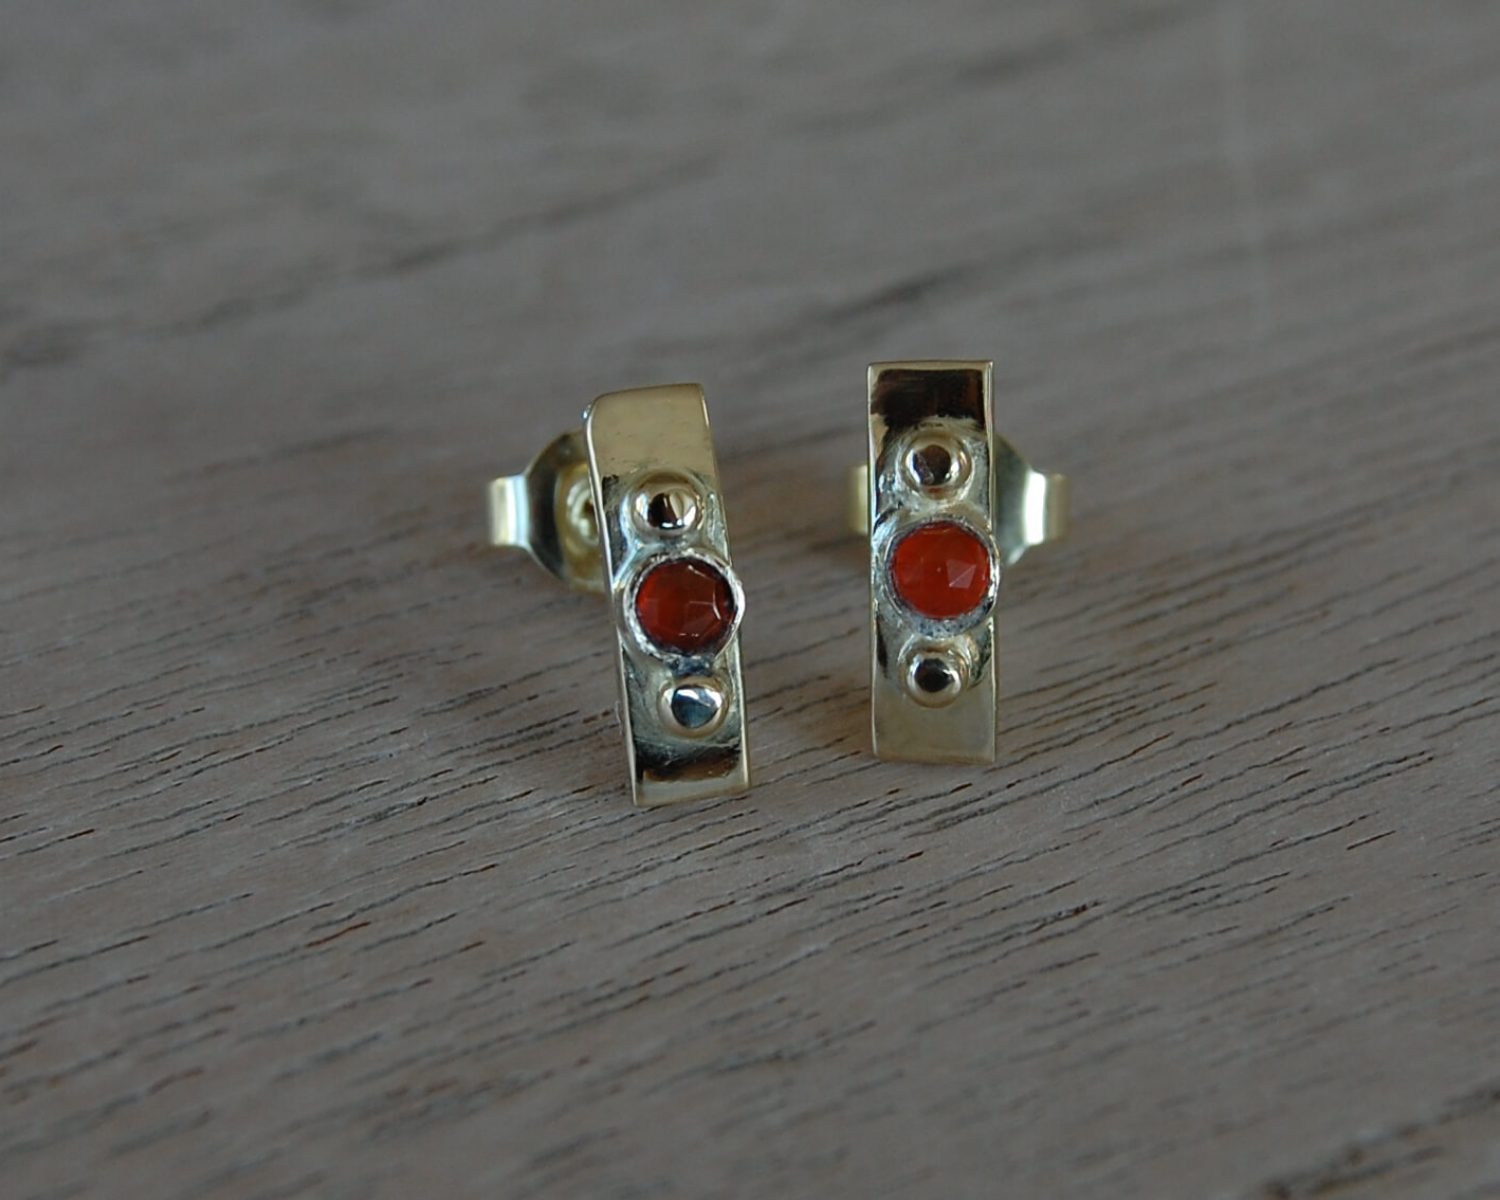 Oorbellen gemaakt uit aangeleverde gouden sieraden - inclusief carneool. Bij deze oorbellen is een passende ring gemaakt (zie "herinneringssieraden").